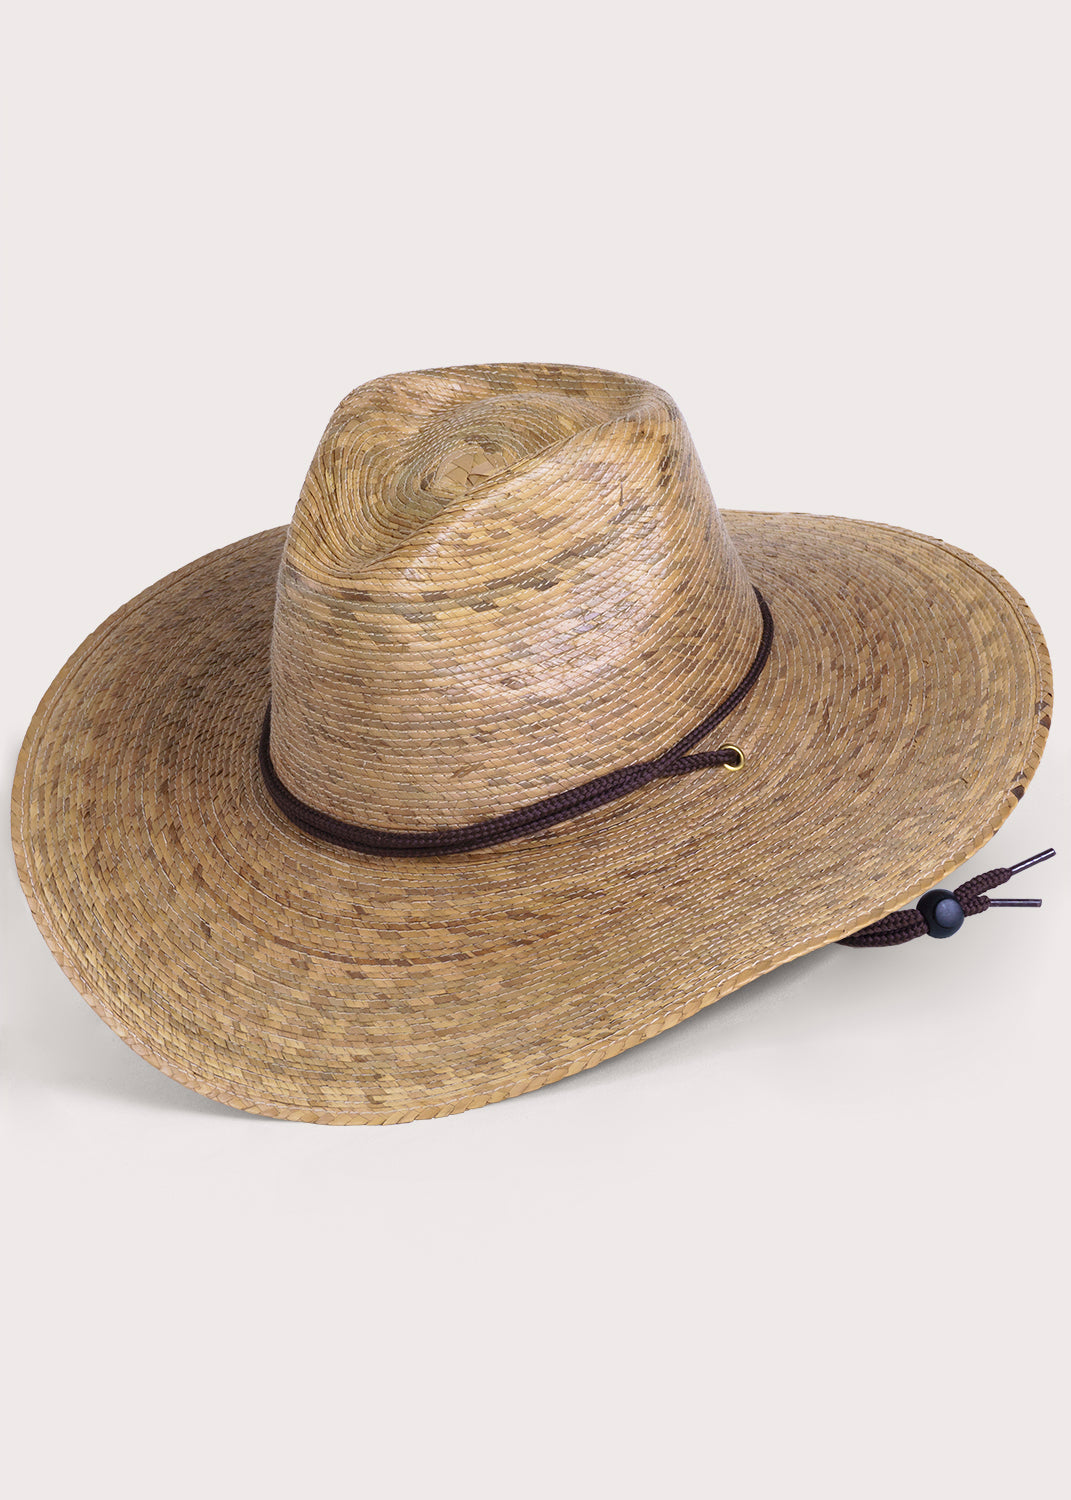 Men's & Unisex Gardener Hat, Handwoven Palm Hat